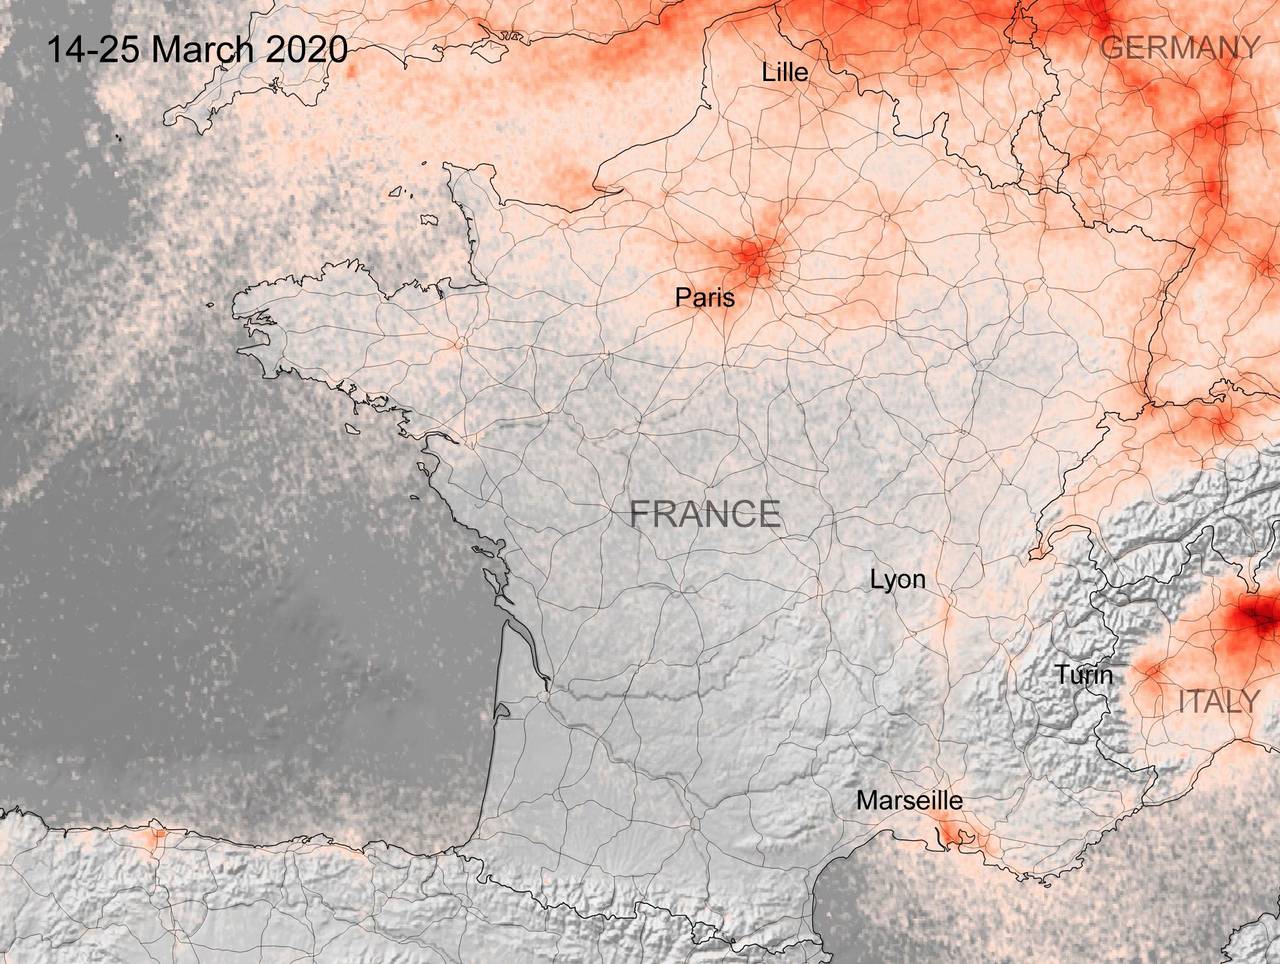 Kart fra ESA som viser konsentrasjonen av NOx-gasser i Frankrike i perioden 14.-25. mars 2020